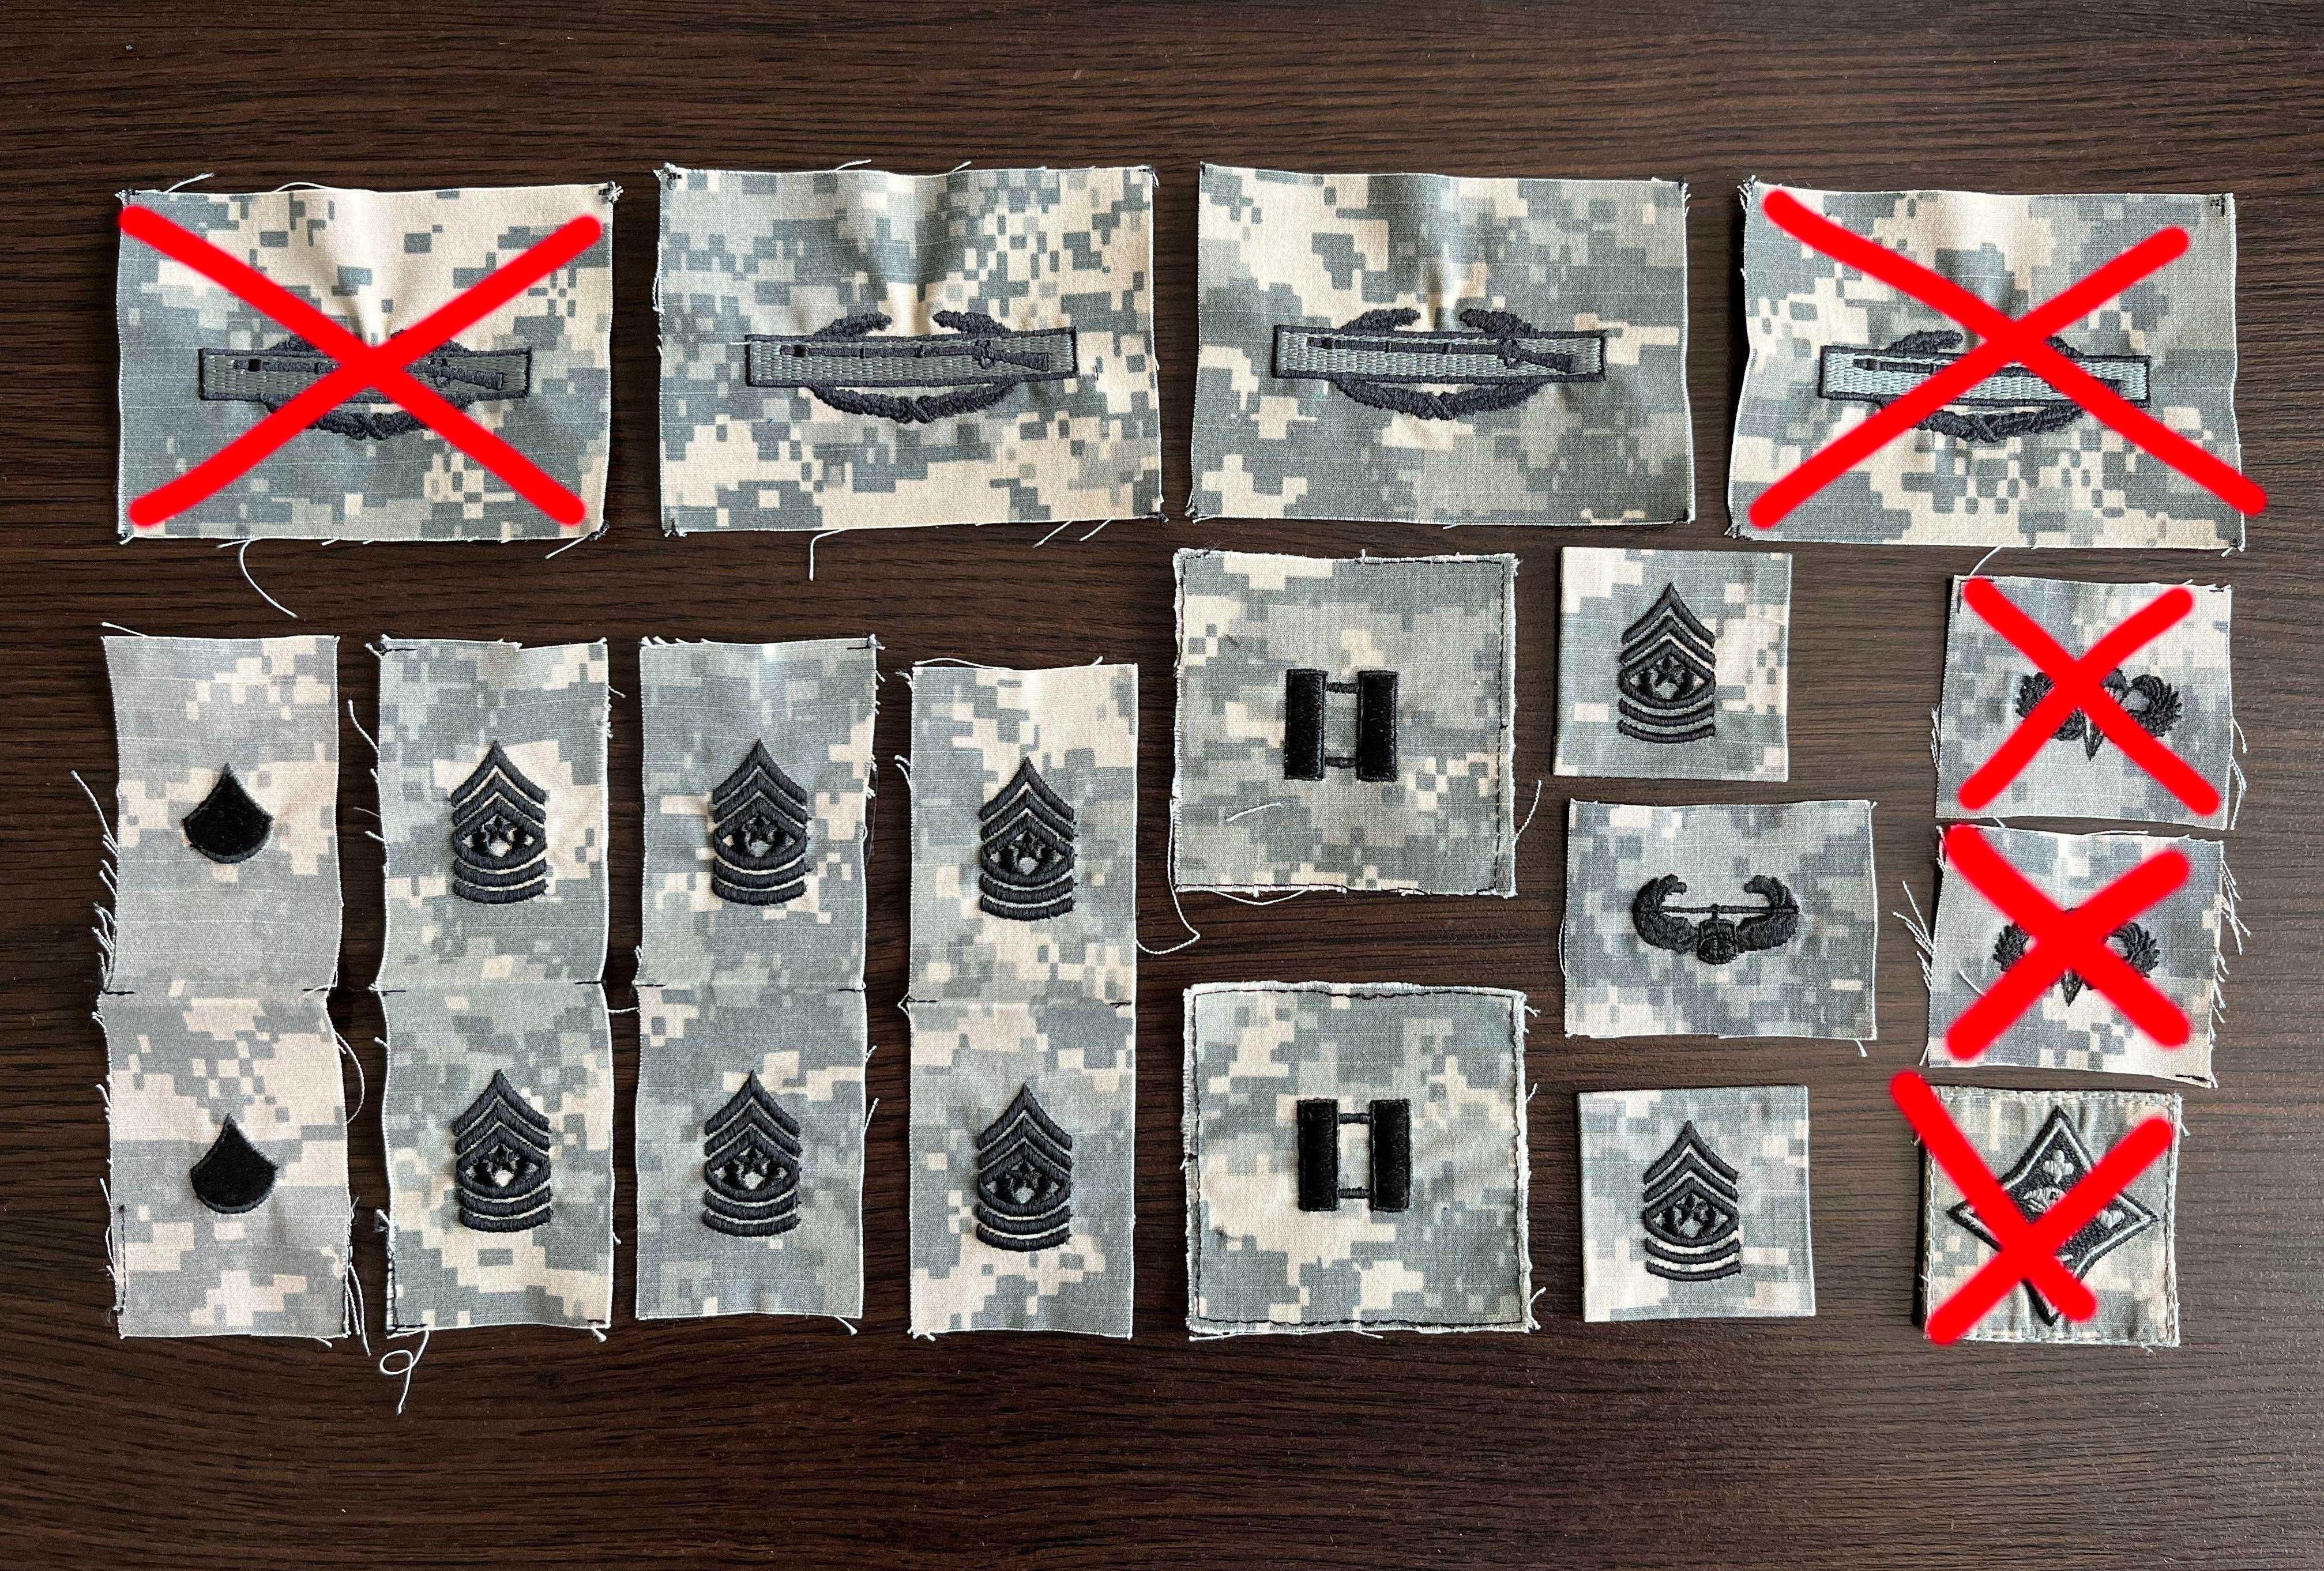 Naszywka USA - US Army, USN, USAF (military, patch) - Badges